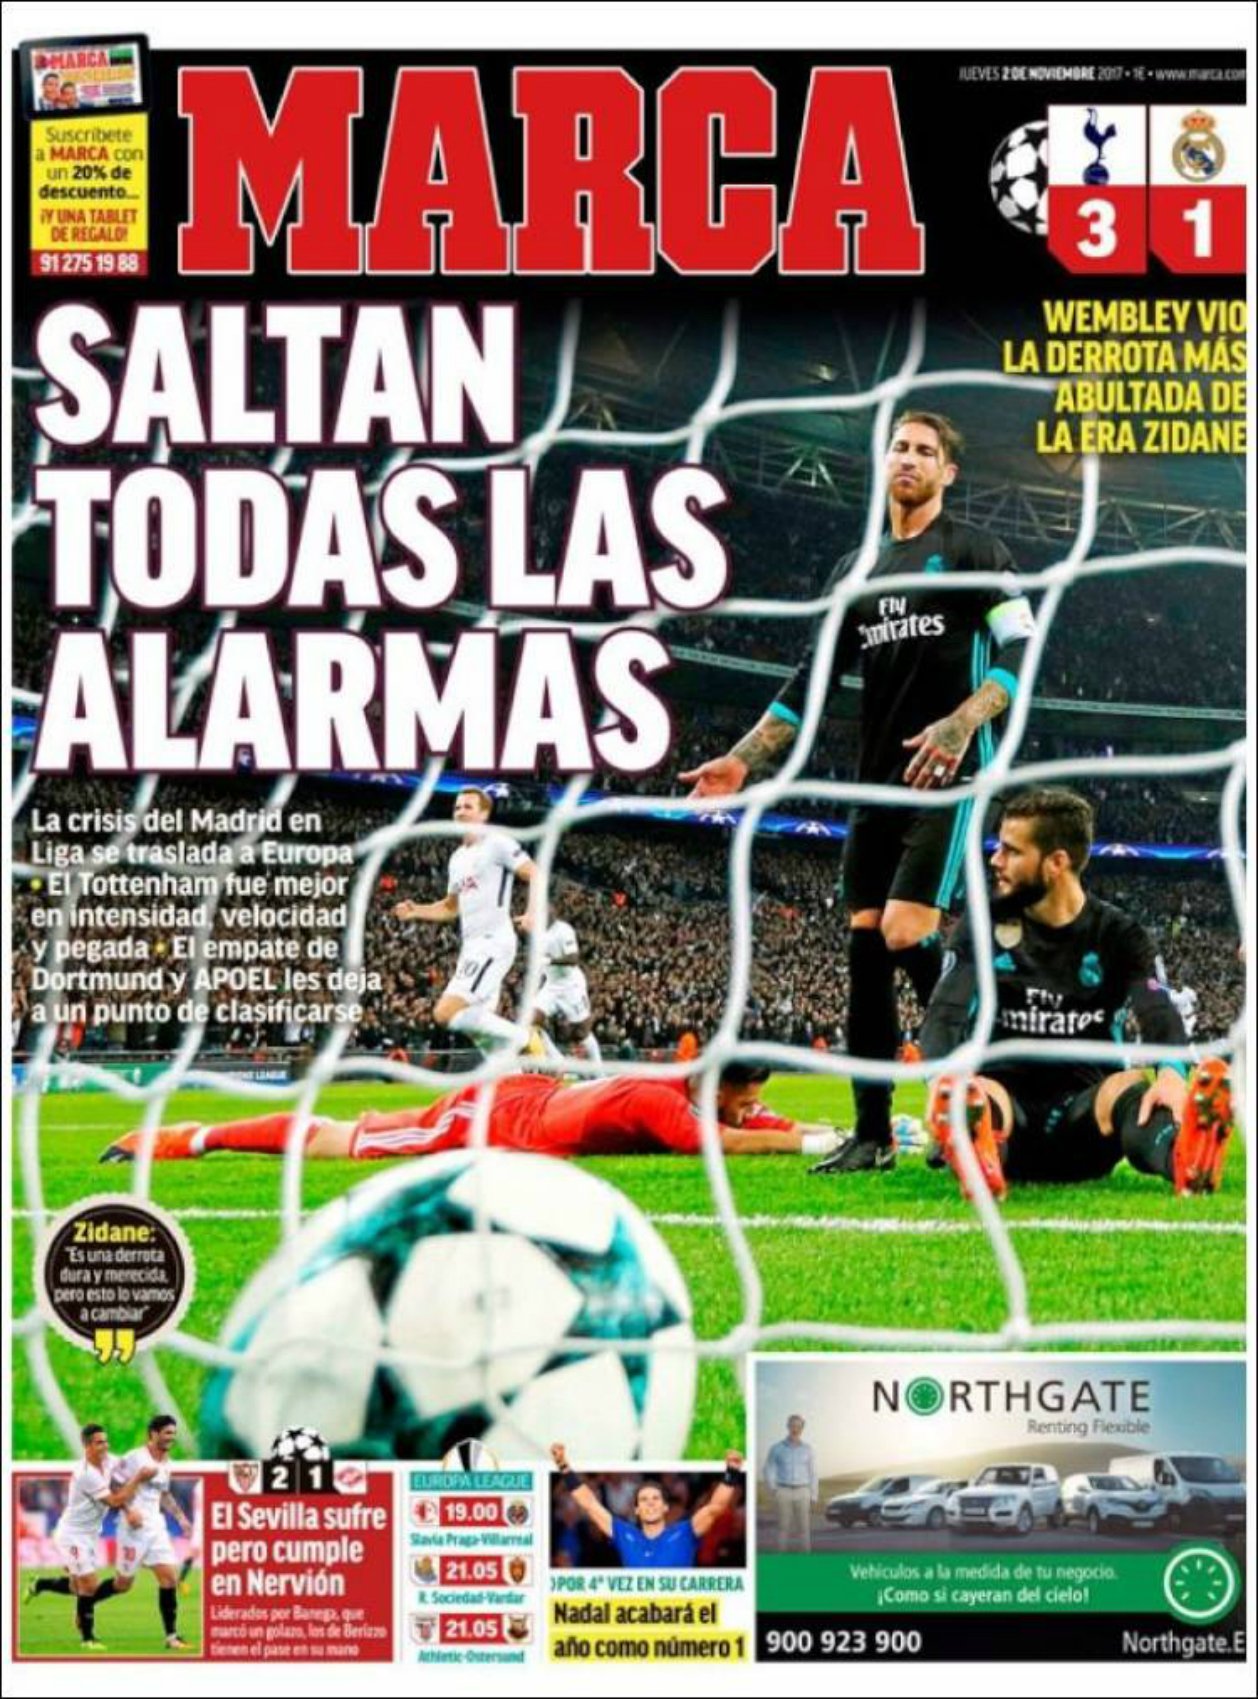 La prensa se ensaña con el Madrid: "Pesadilla en Wembley"